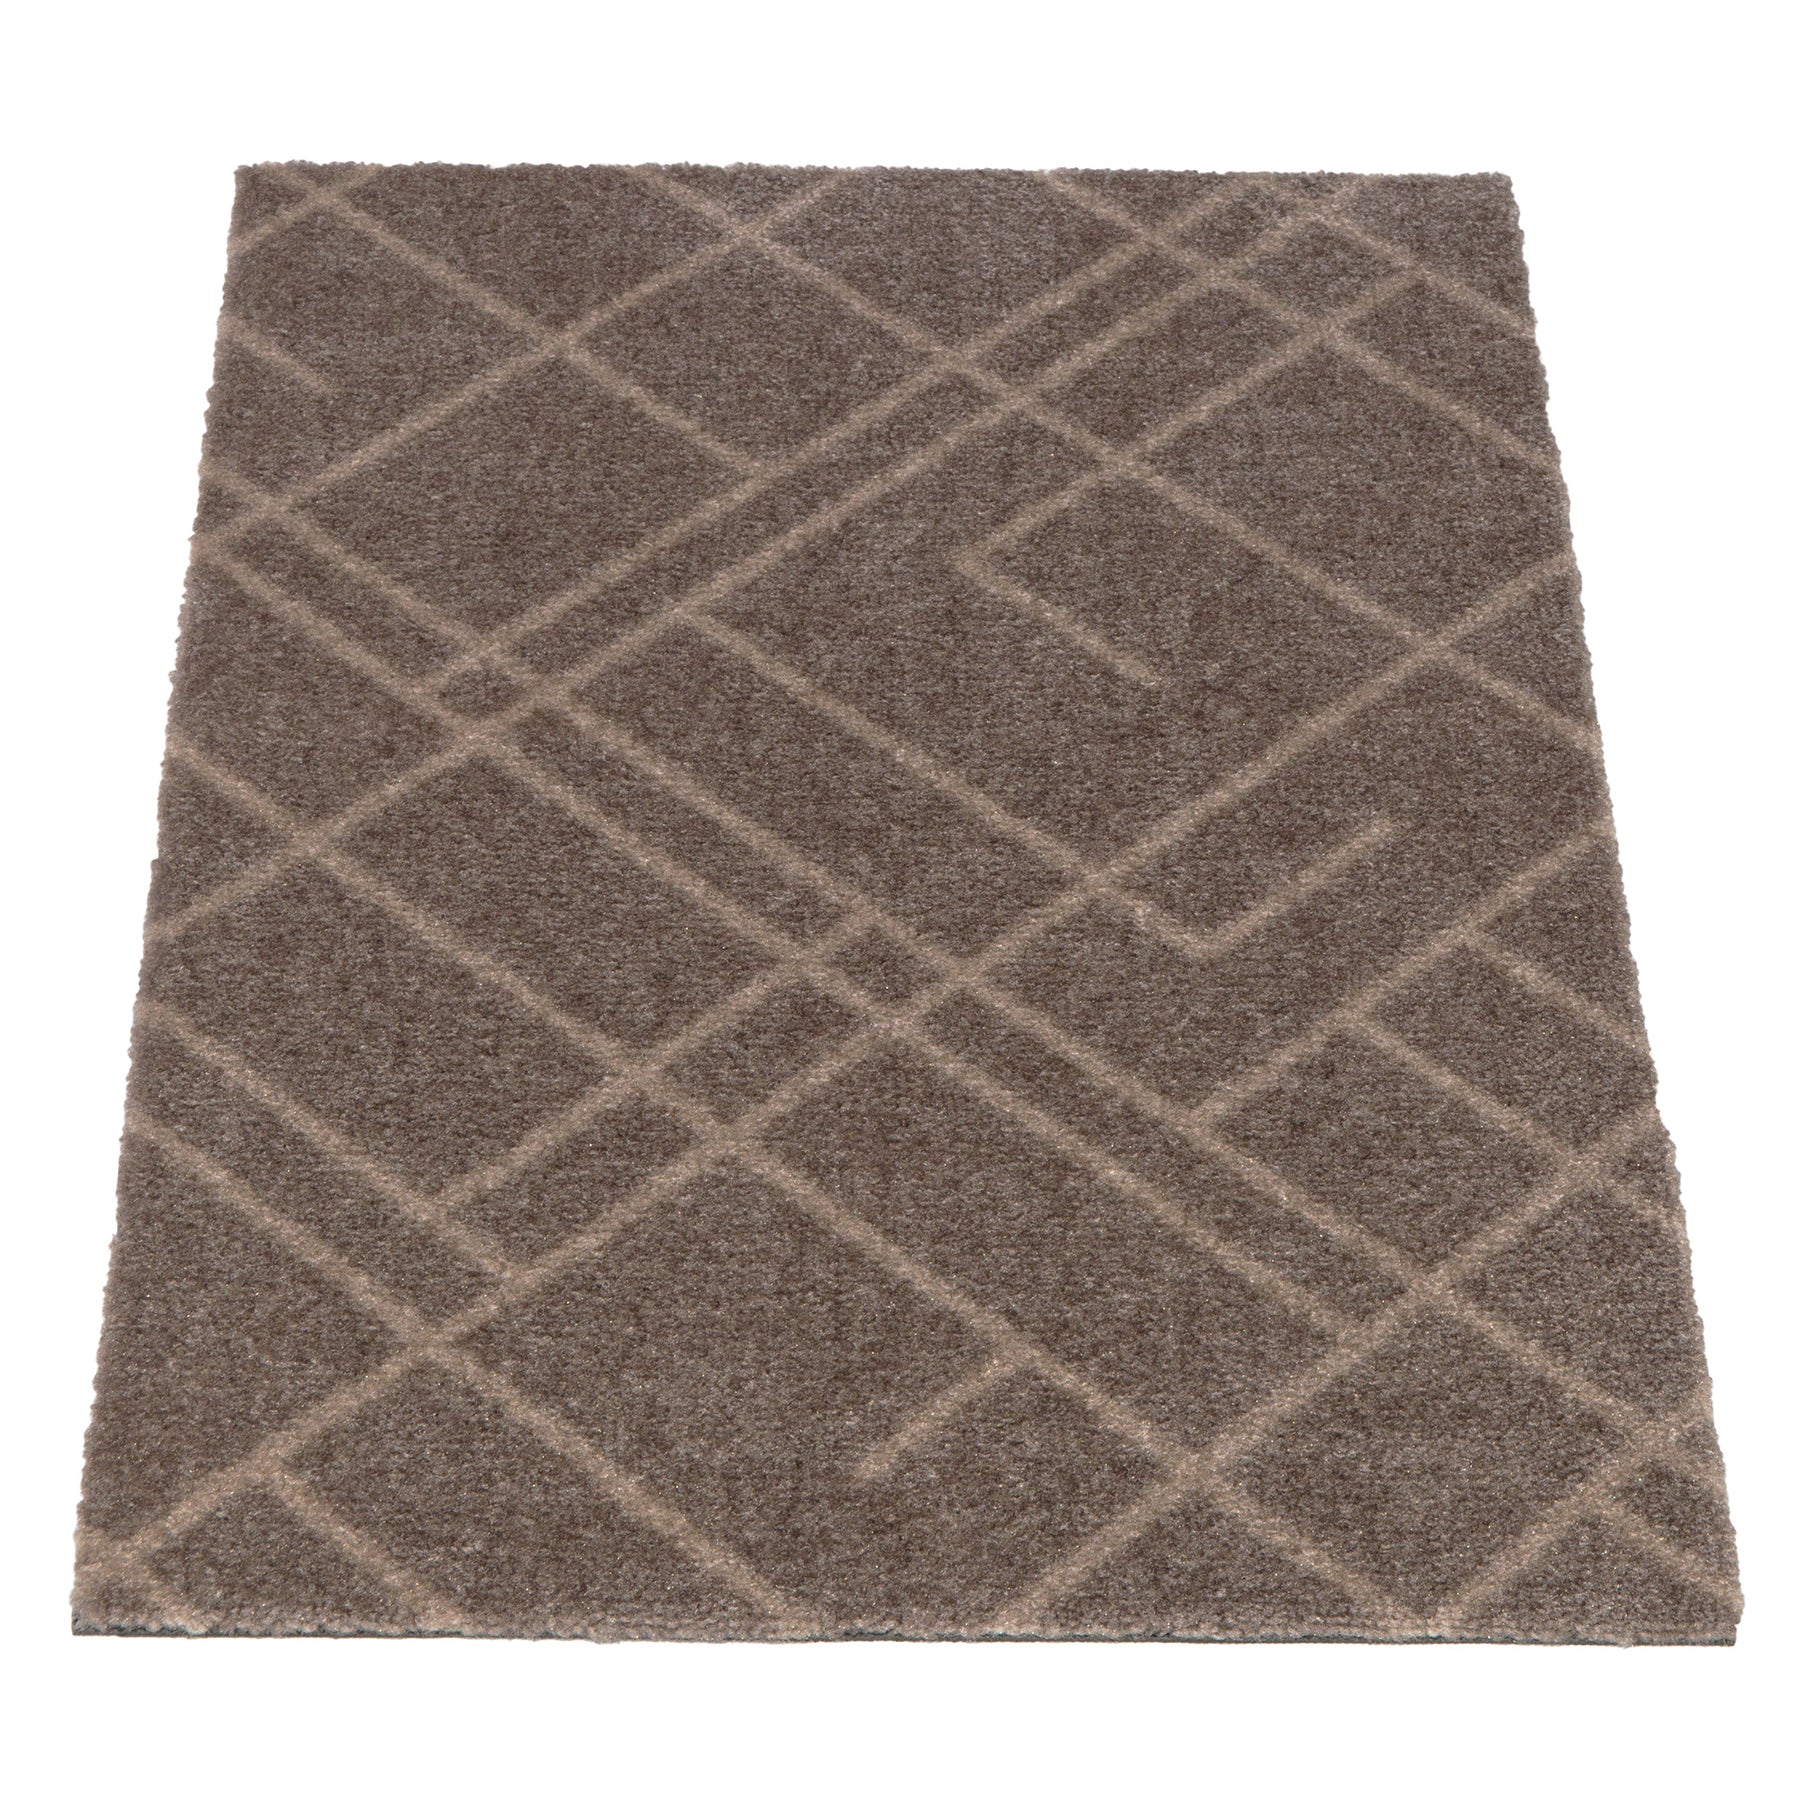 Floor mat 40 x 60 cm - lines/sand